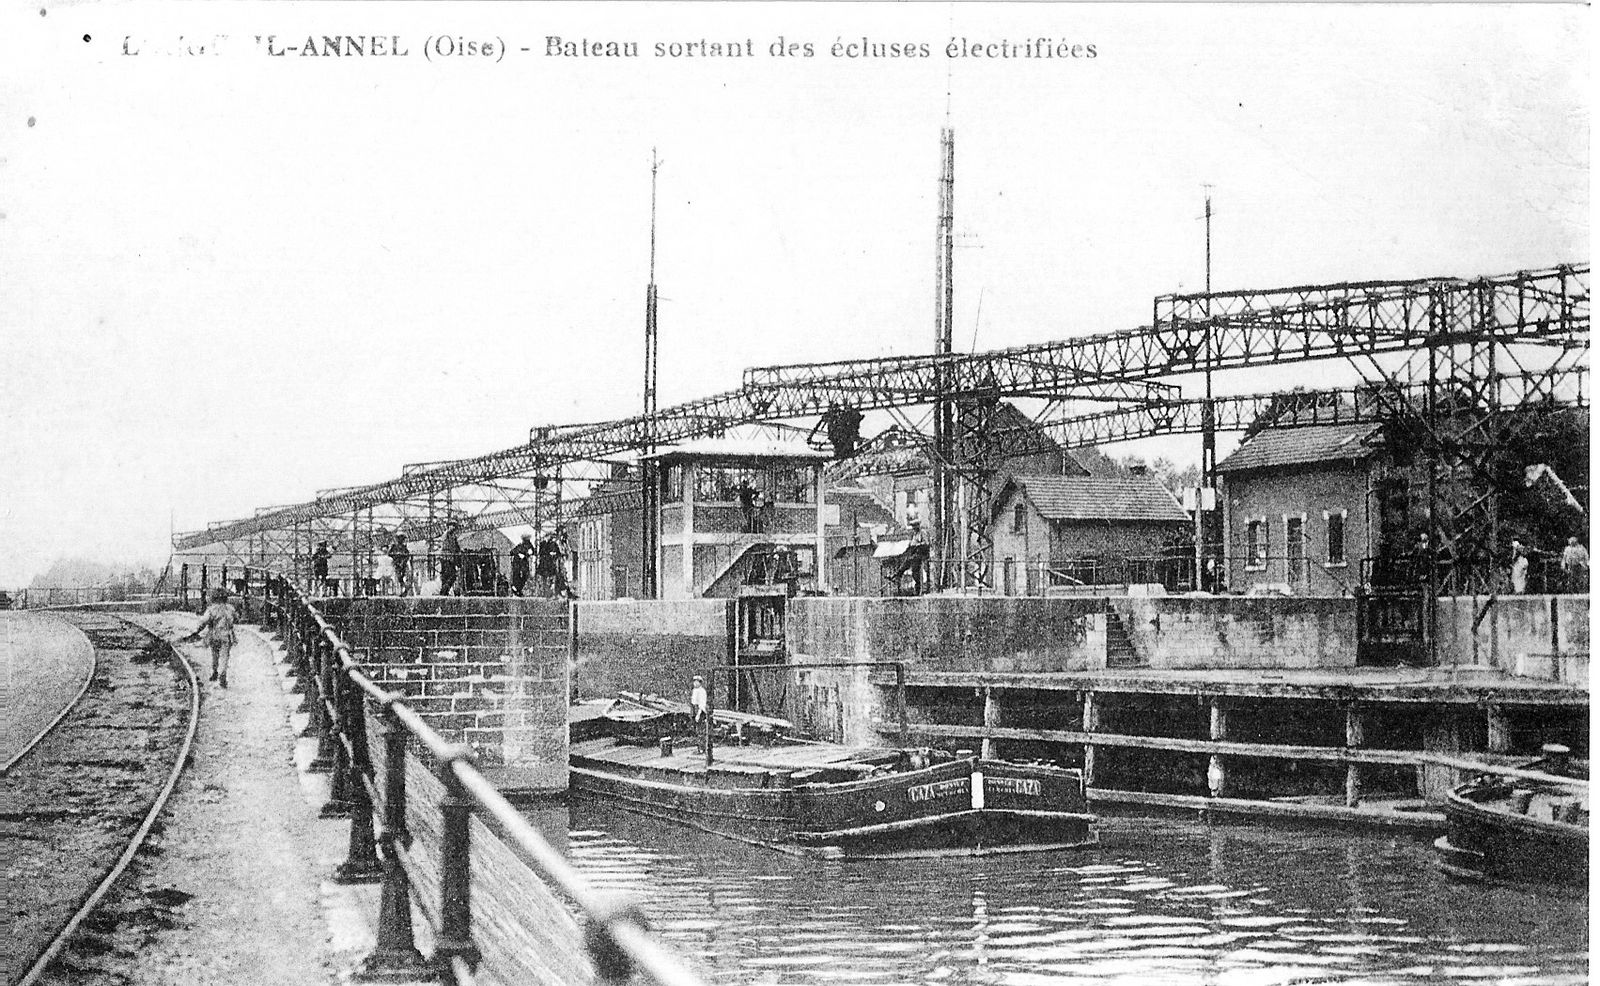 Album - le village de Longueil-Annel (Oise),  les écluses électrifiées